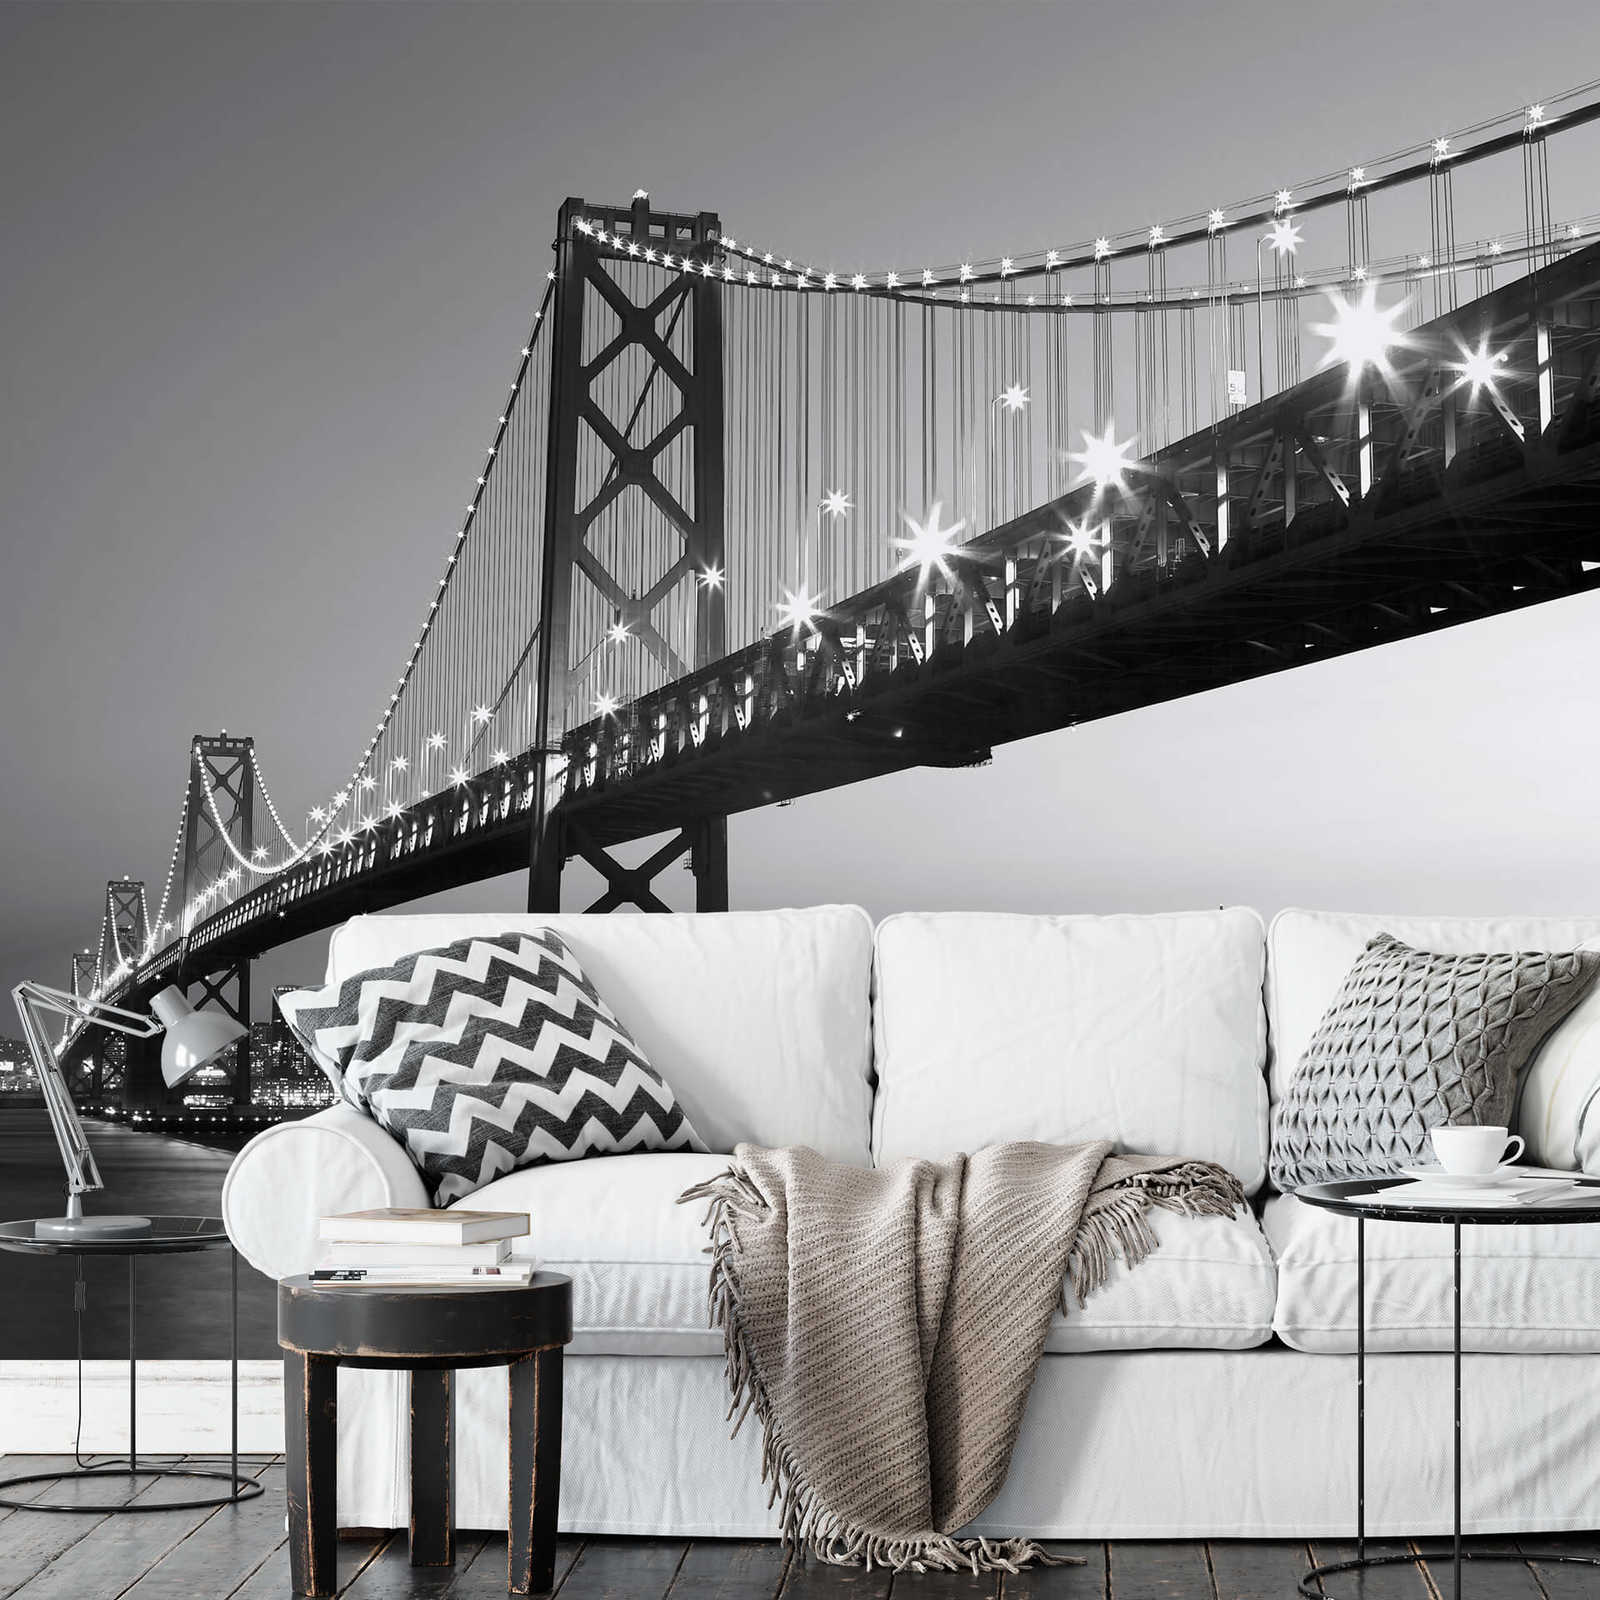             Mural en blanco y negro del horizonte y el puente de San Francisco
        